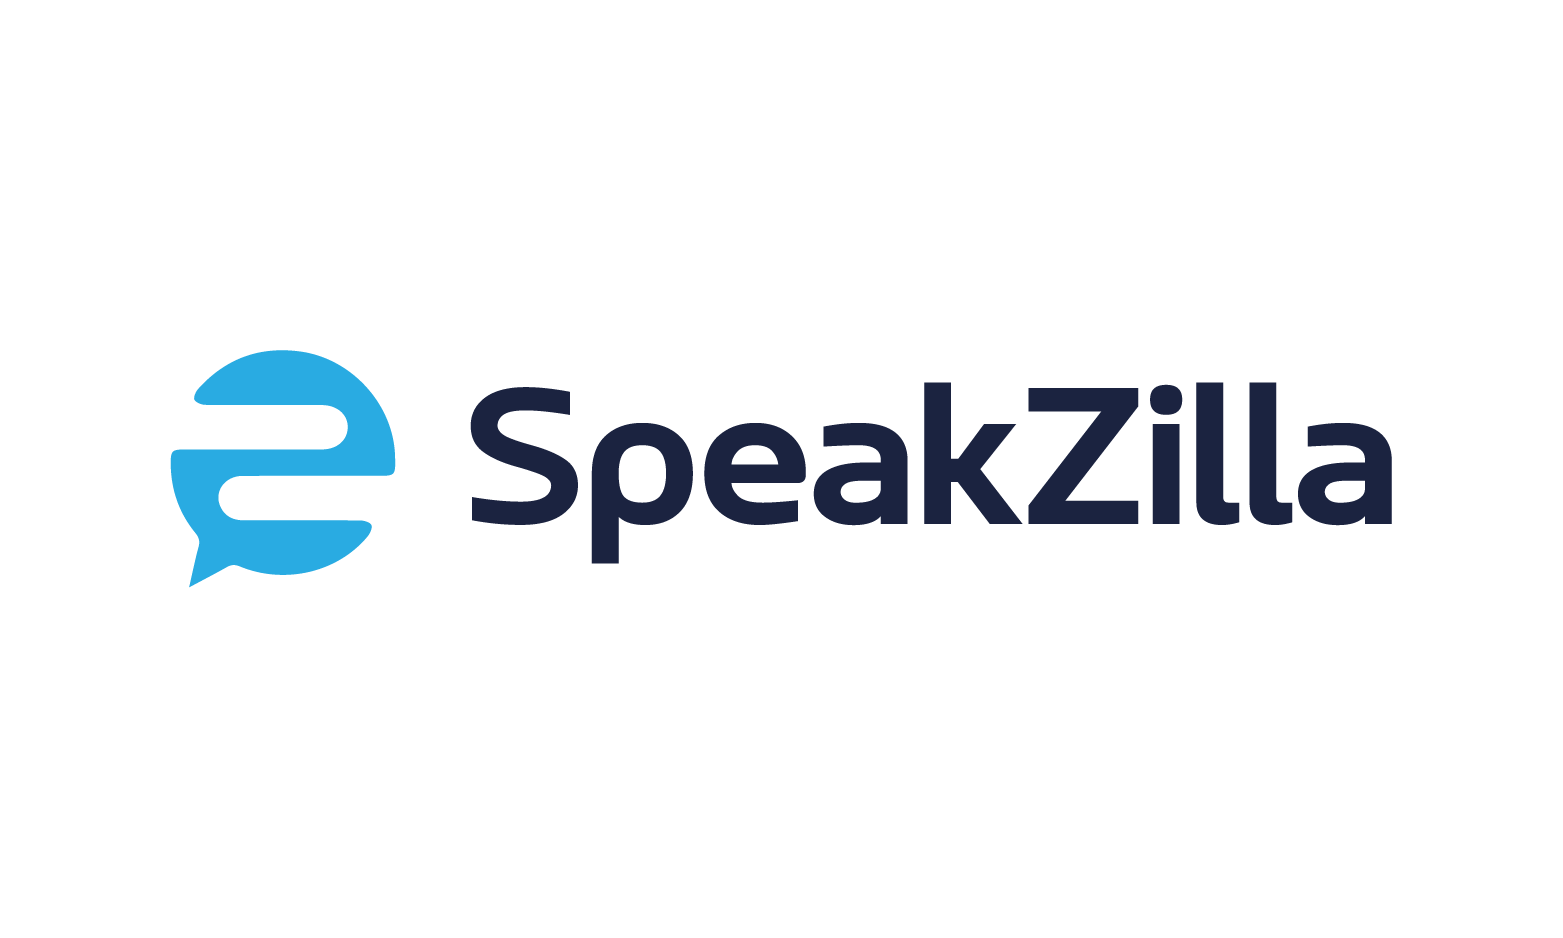 SpeakZilla.com - Creative brandable domain for sale